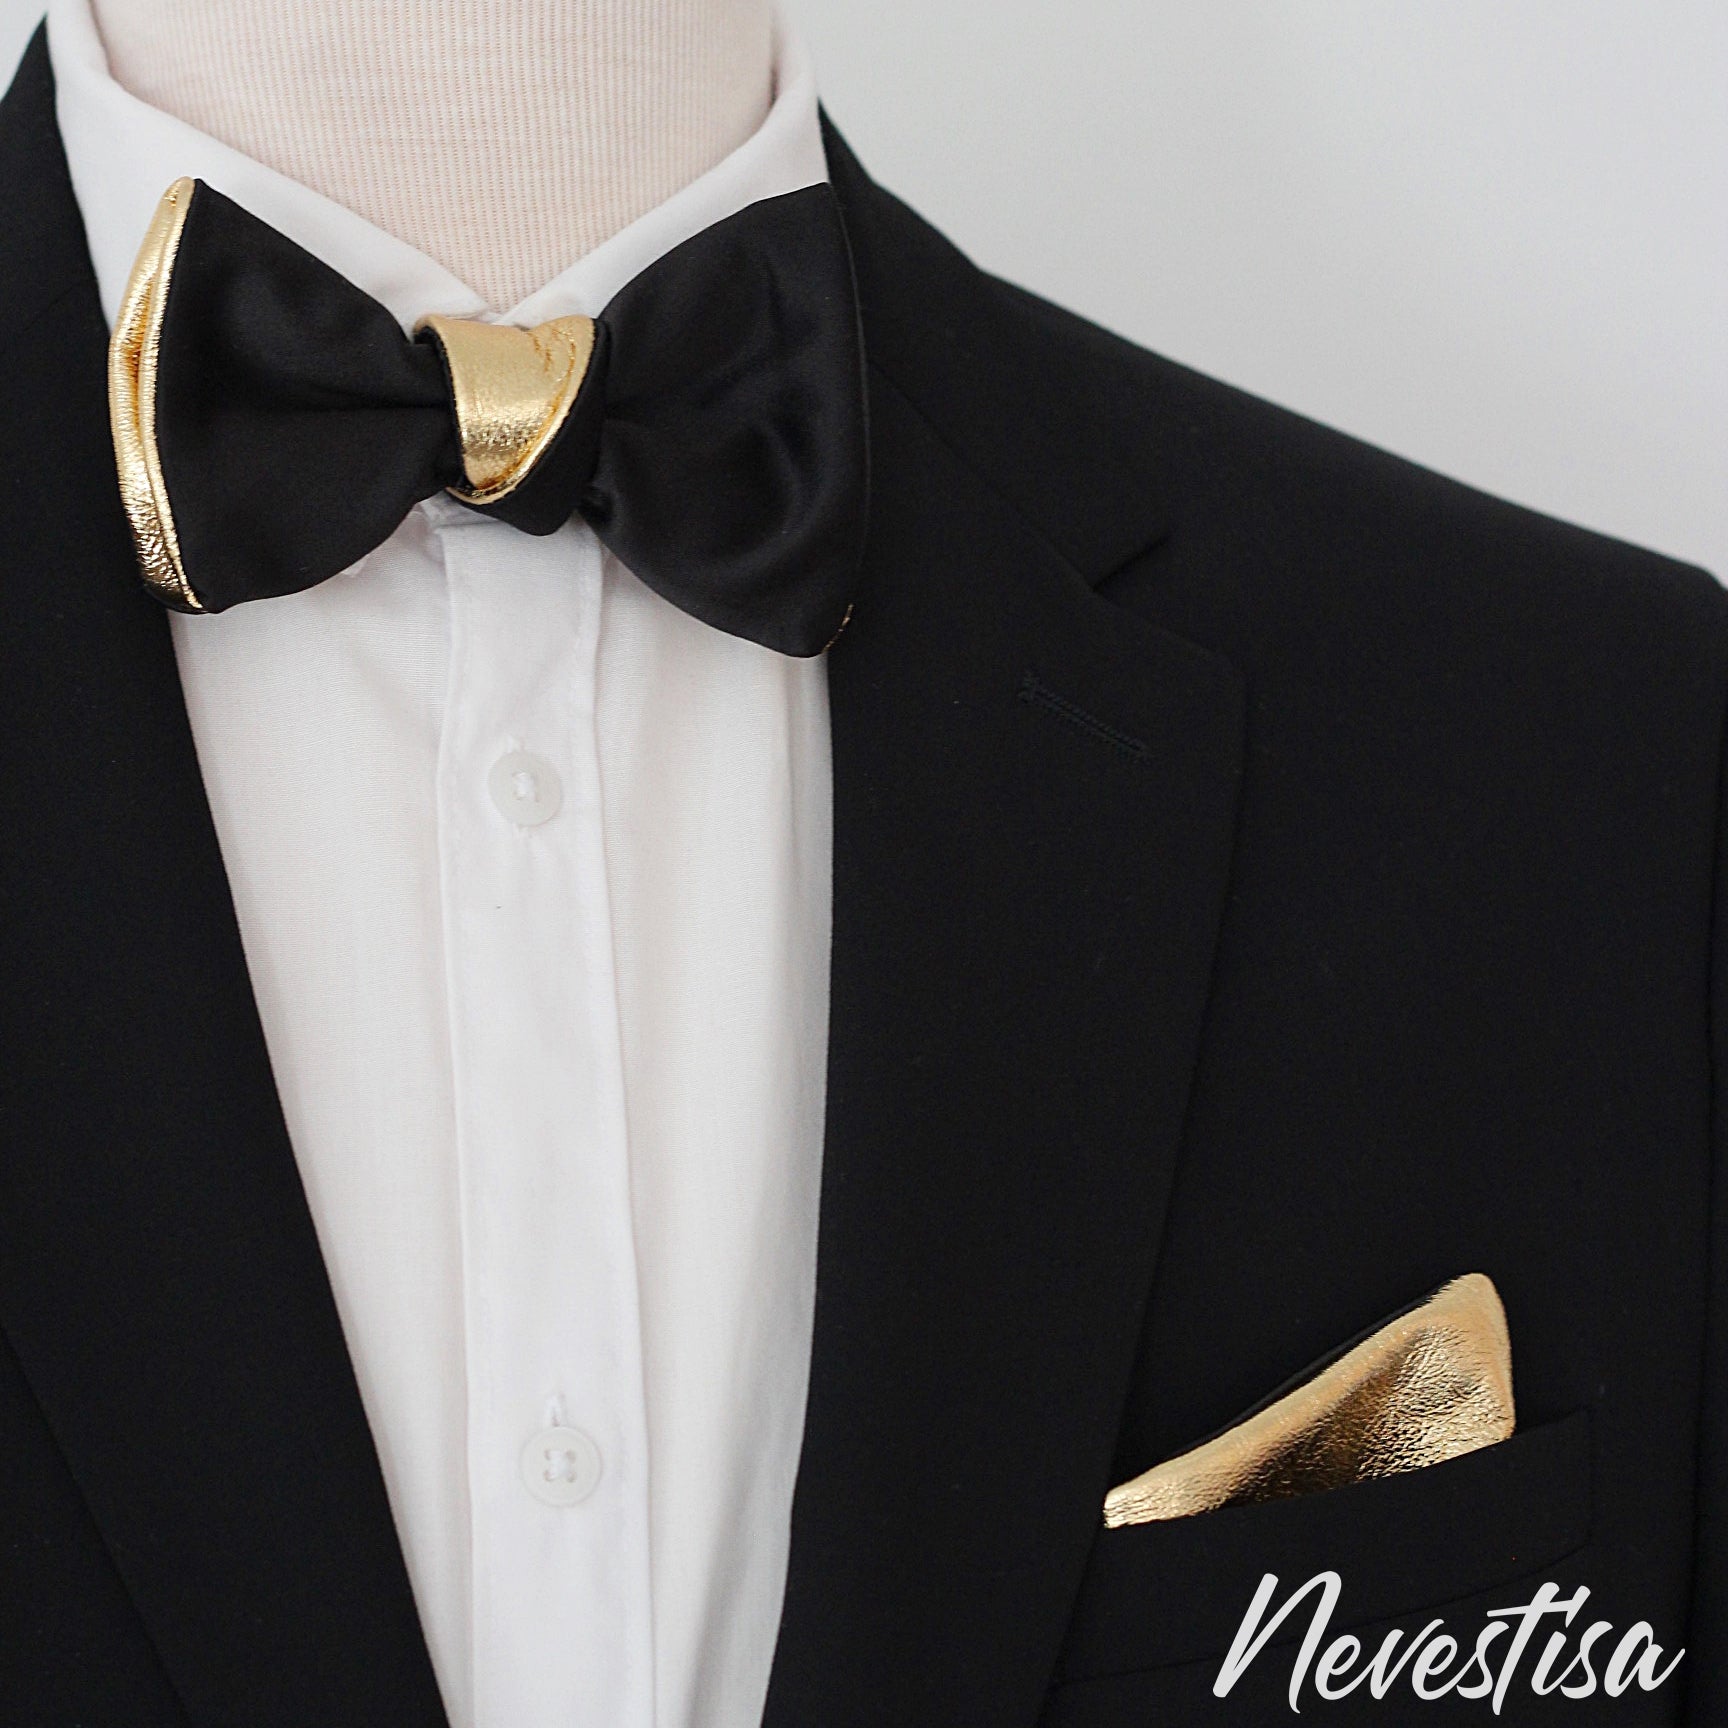 Black Tie Suits Cork | Suits.ie